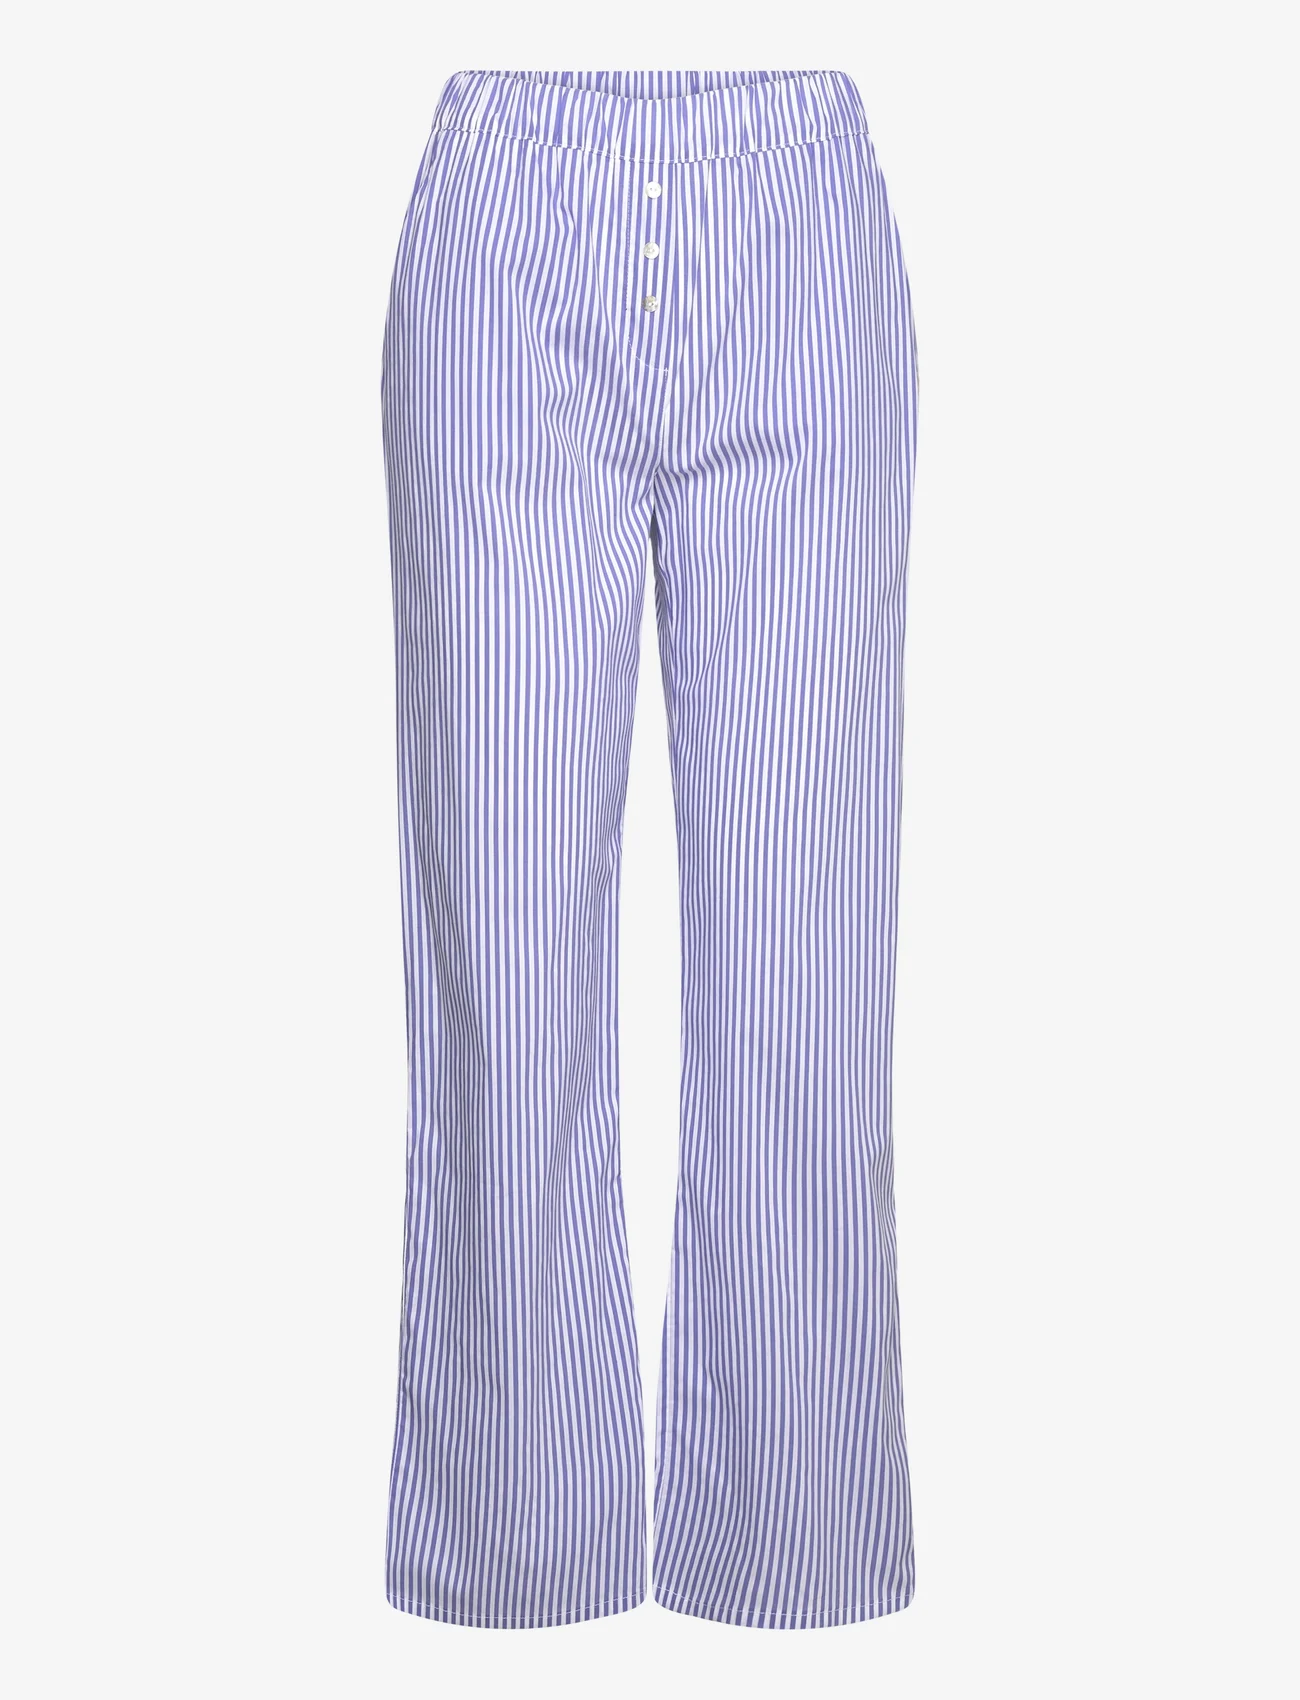 Etam - Cleeo Trouser Pyjama Bottom - women - blue - 0